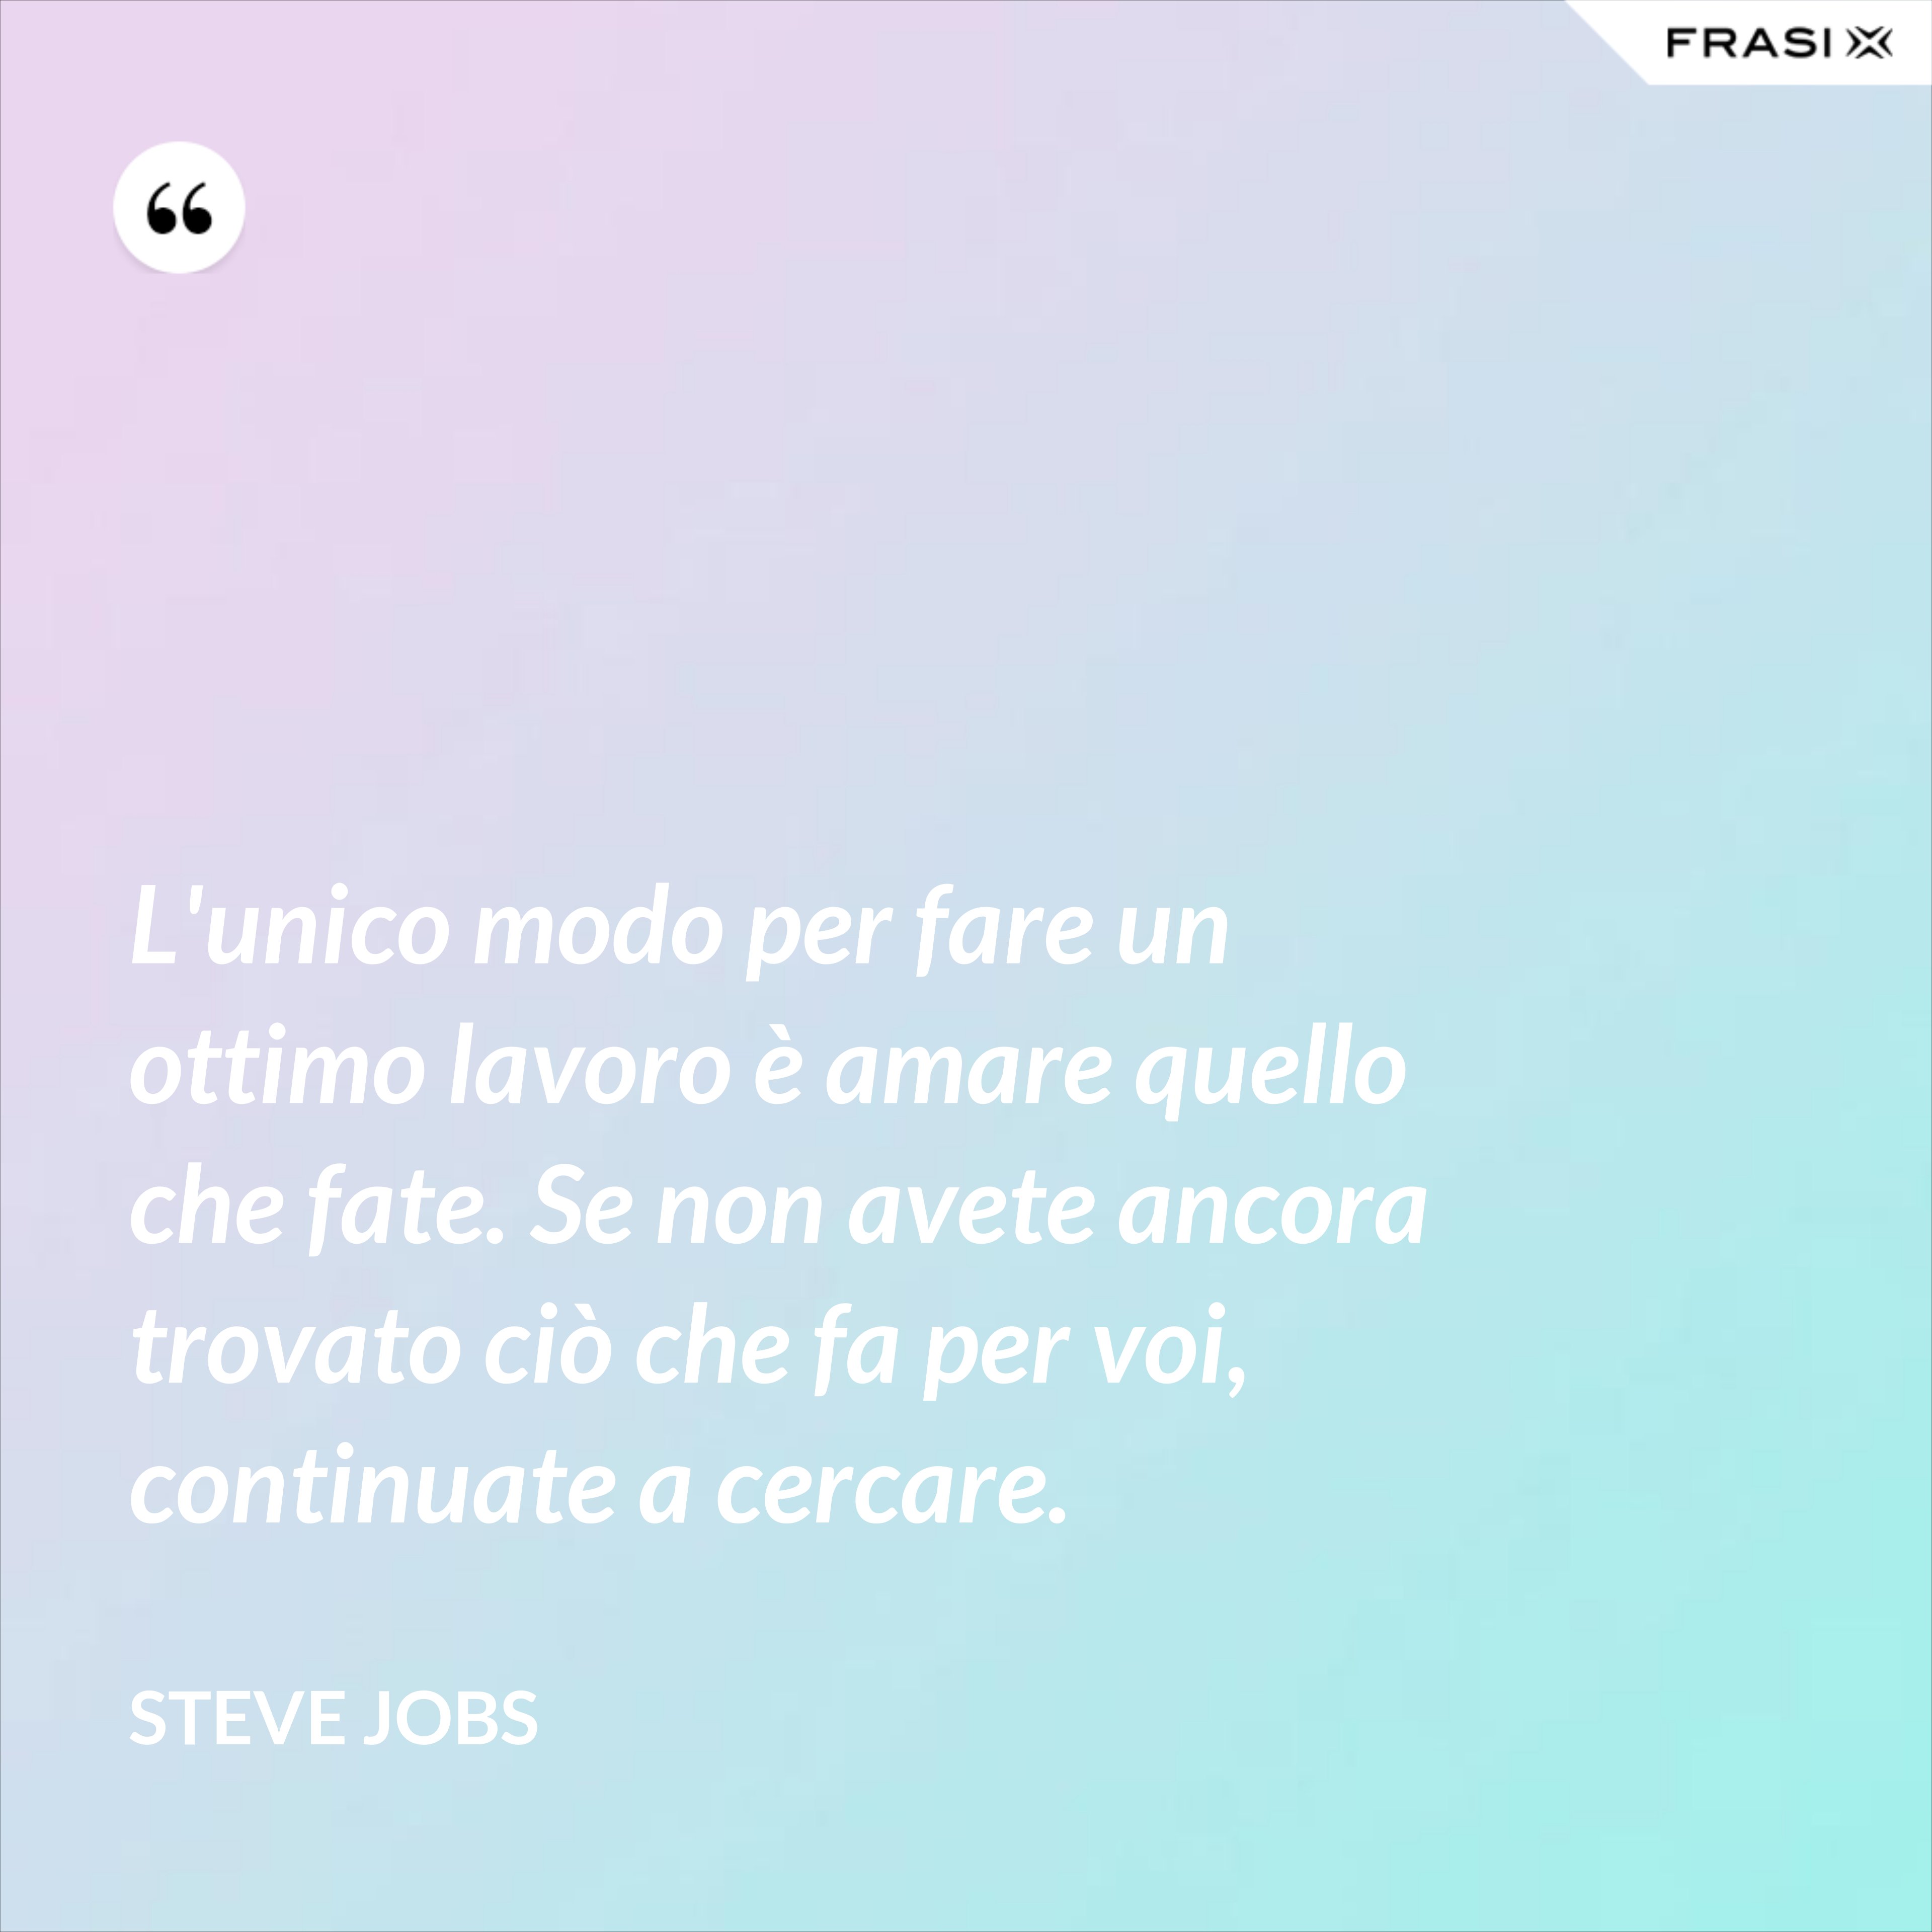 L'unico modo per fare un ottimo lavoro è amare quello che fate. Se non avete ancora trovato ciò che fa per voi, continuate a cercare. - Steve Jobs